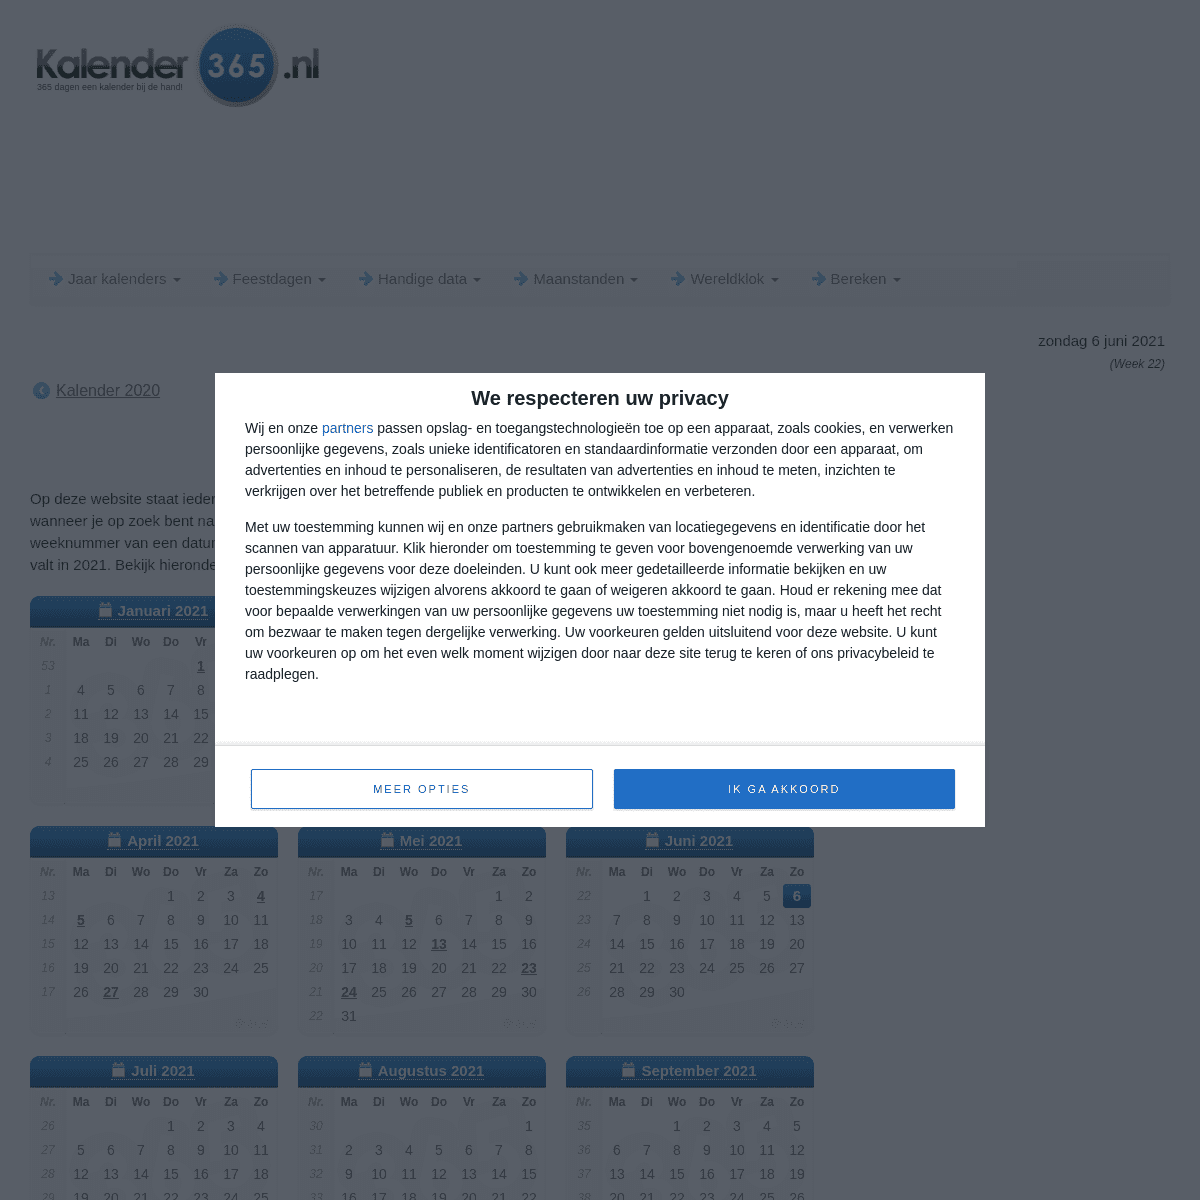 A complete backup of https://kalender-365.nl